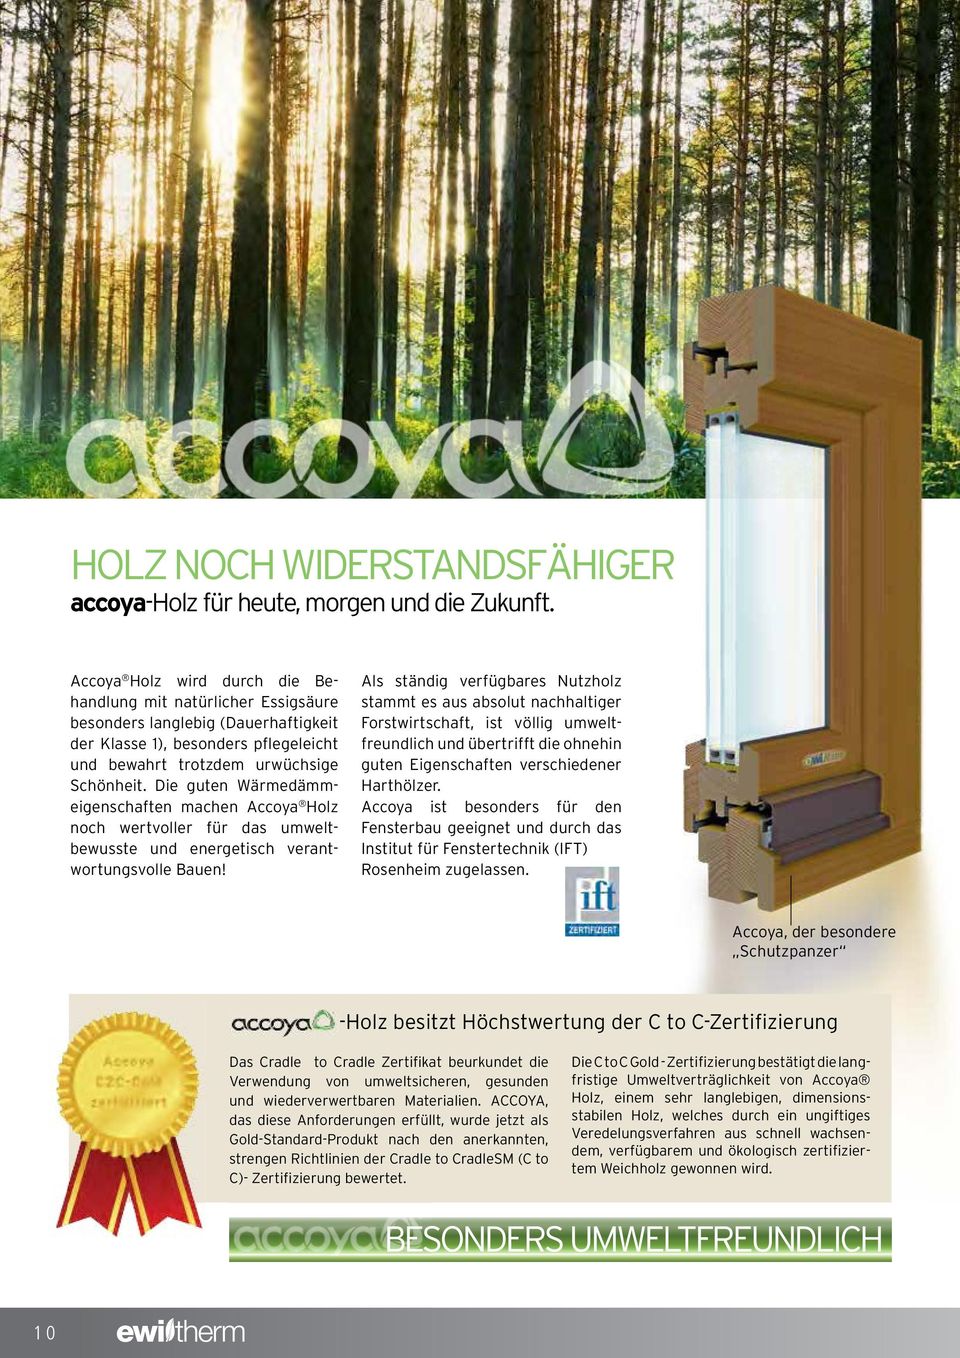 Die guten Wärmedämmeigenschaften machen Accoya Holz noch wertvoller für das umweltbewusste und energetisch verantwortungsvolle Bauen!